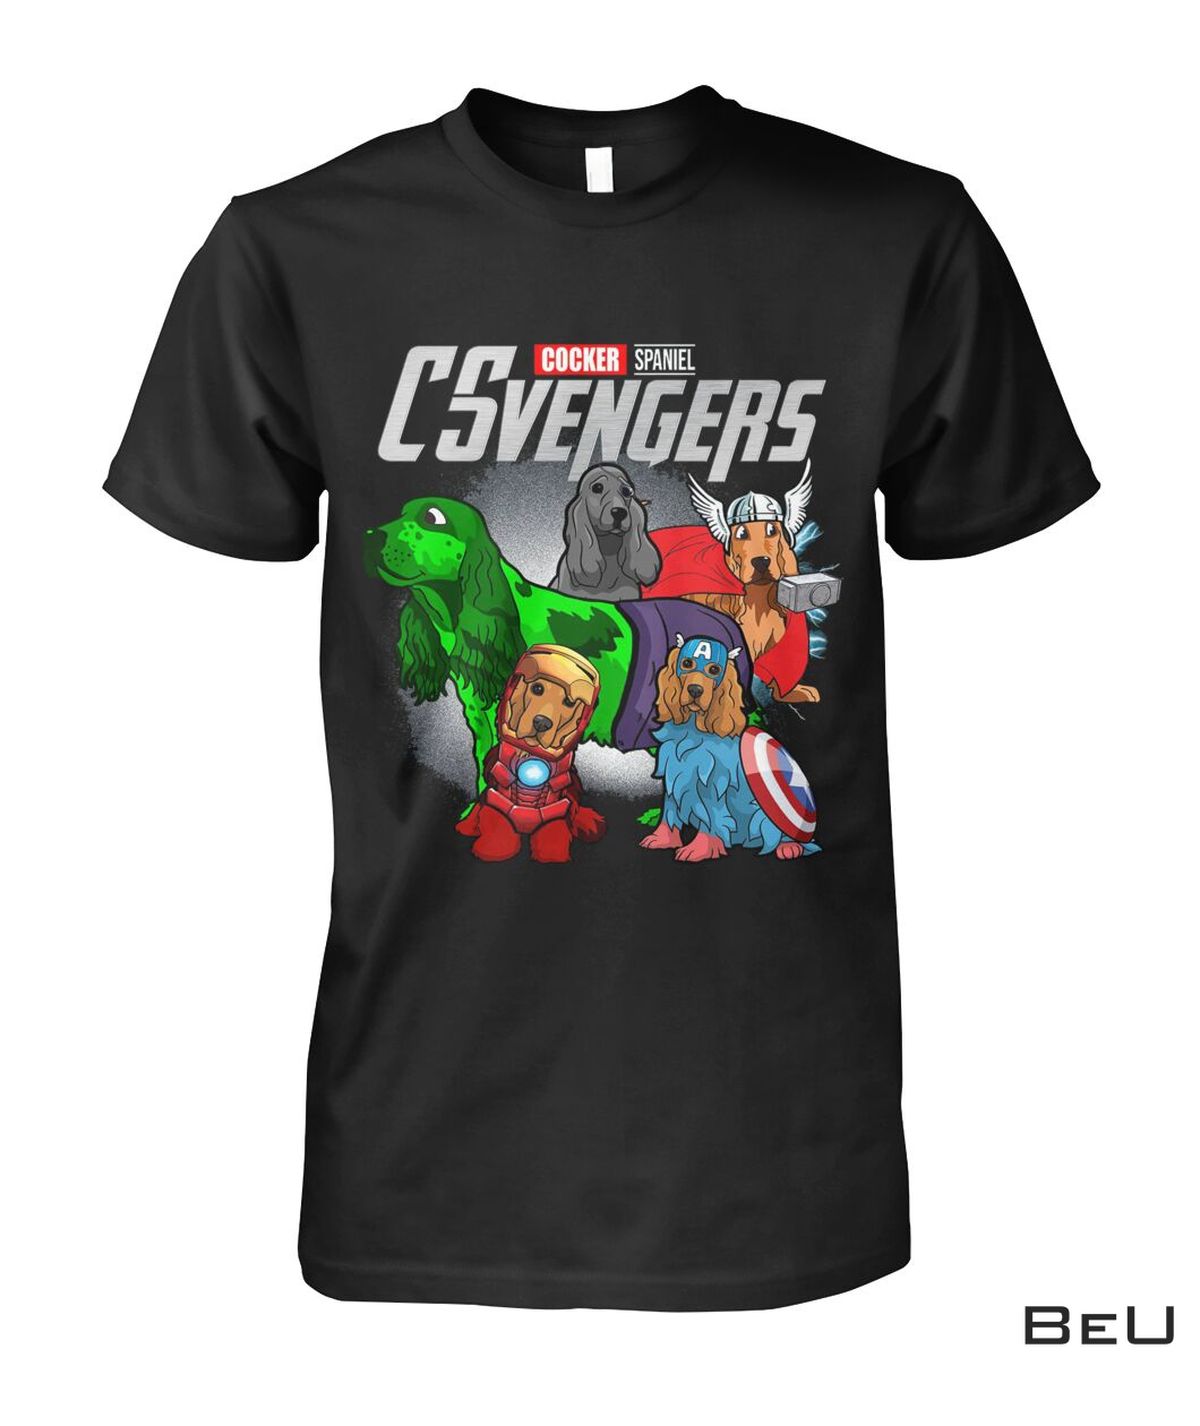 Cocker Spaniel CSvengers Avengers Shirt